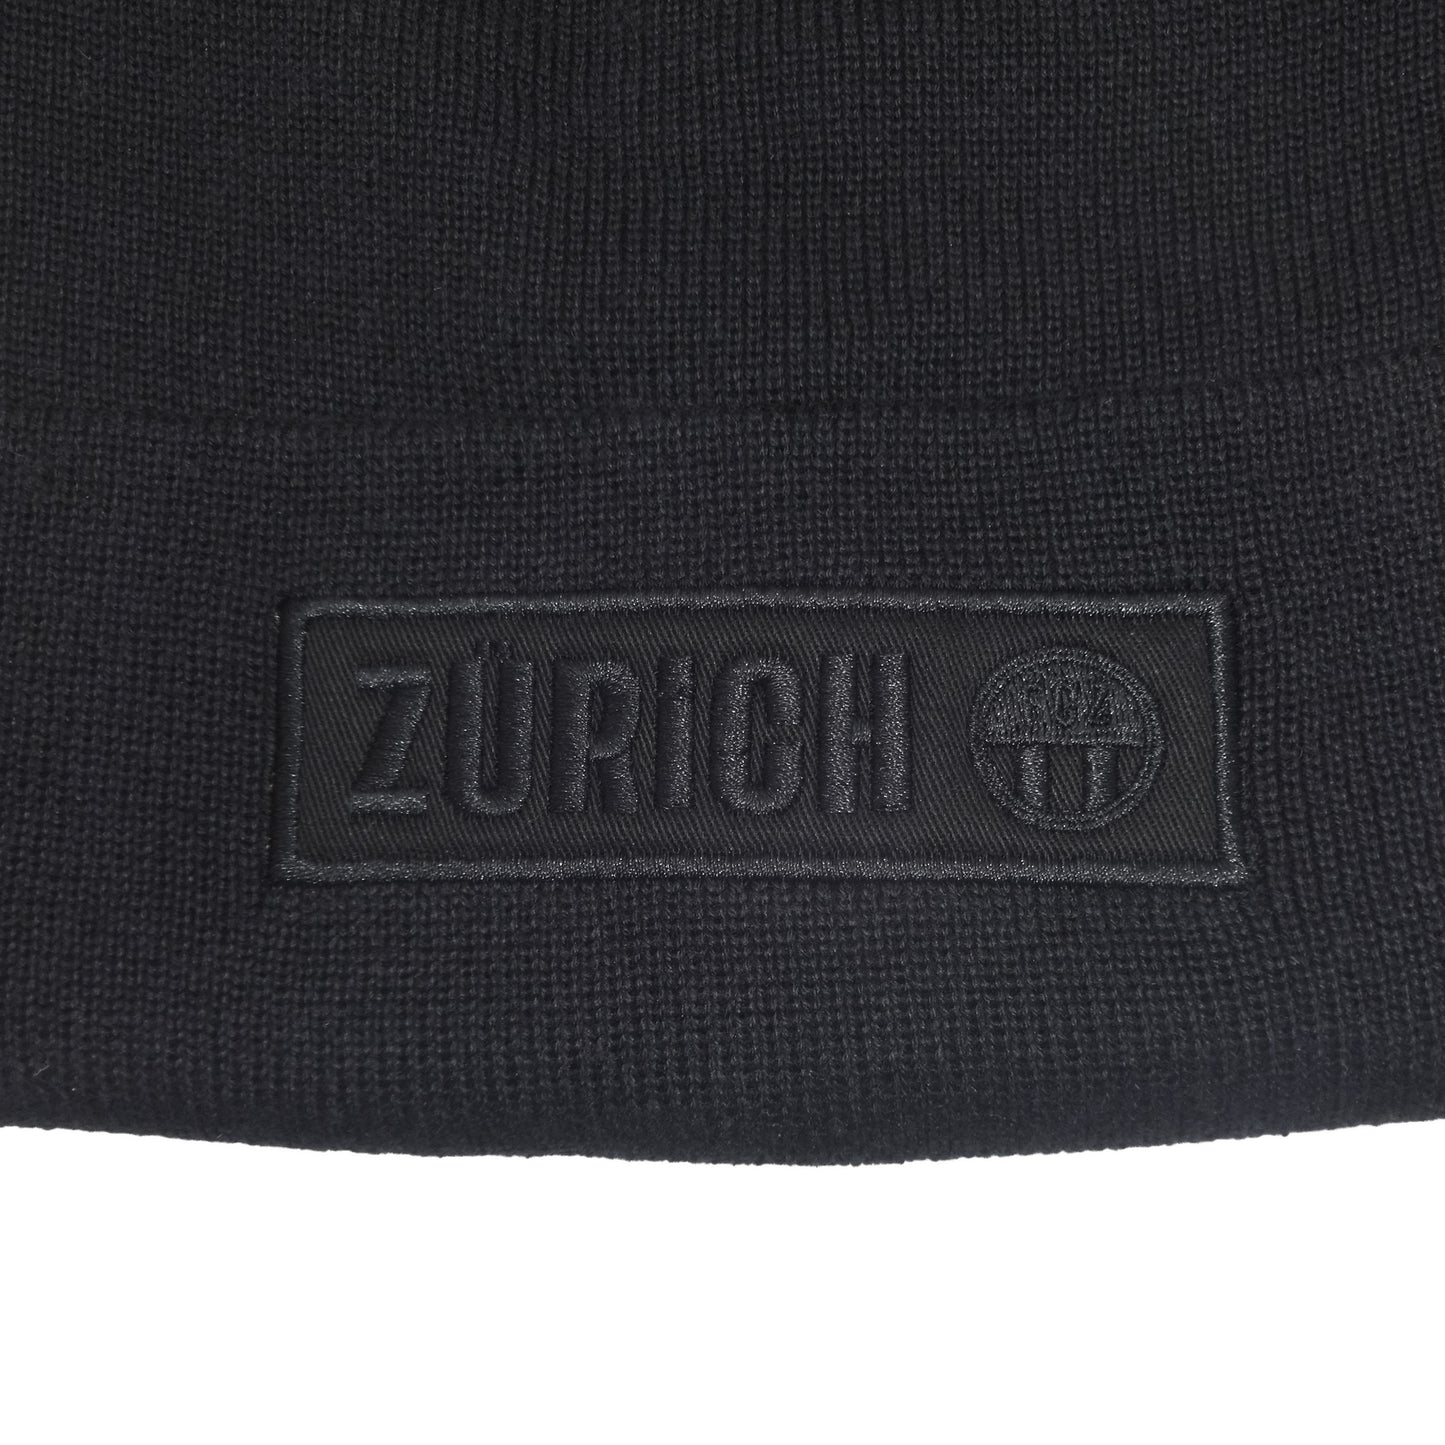 Mütze Zürich schwarz